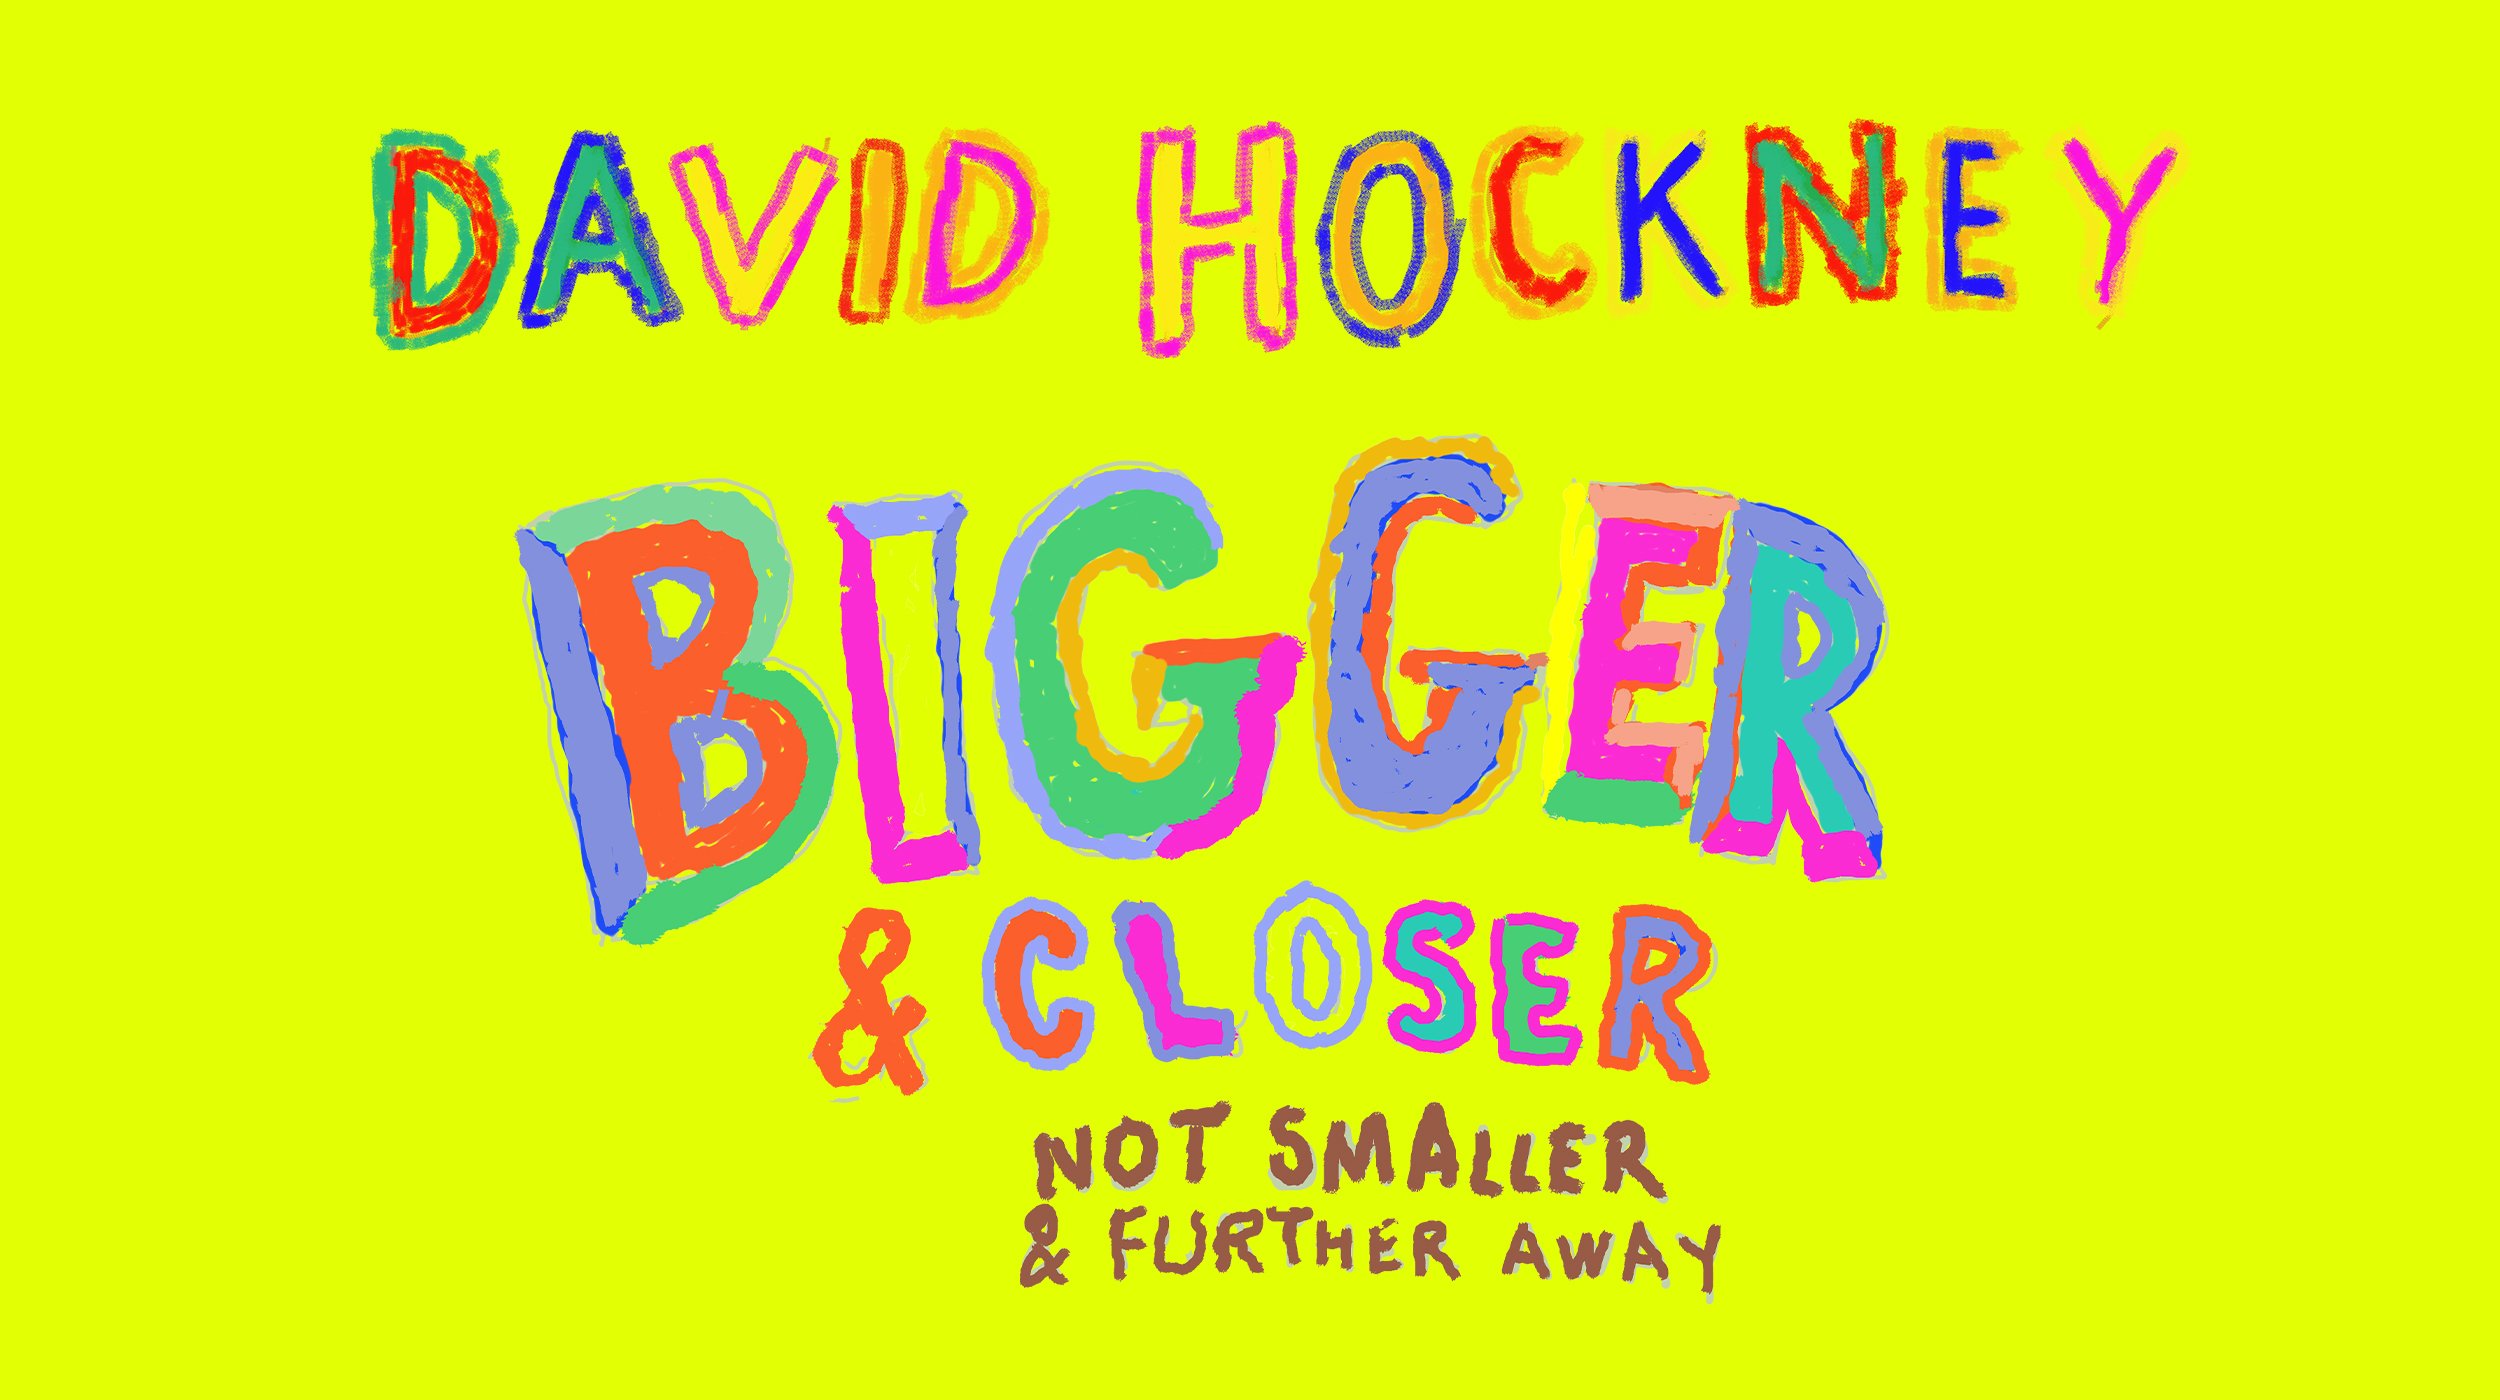 7. Lightroom - David Hockney  Bigger & Closer (not smaller & further away).jpg